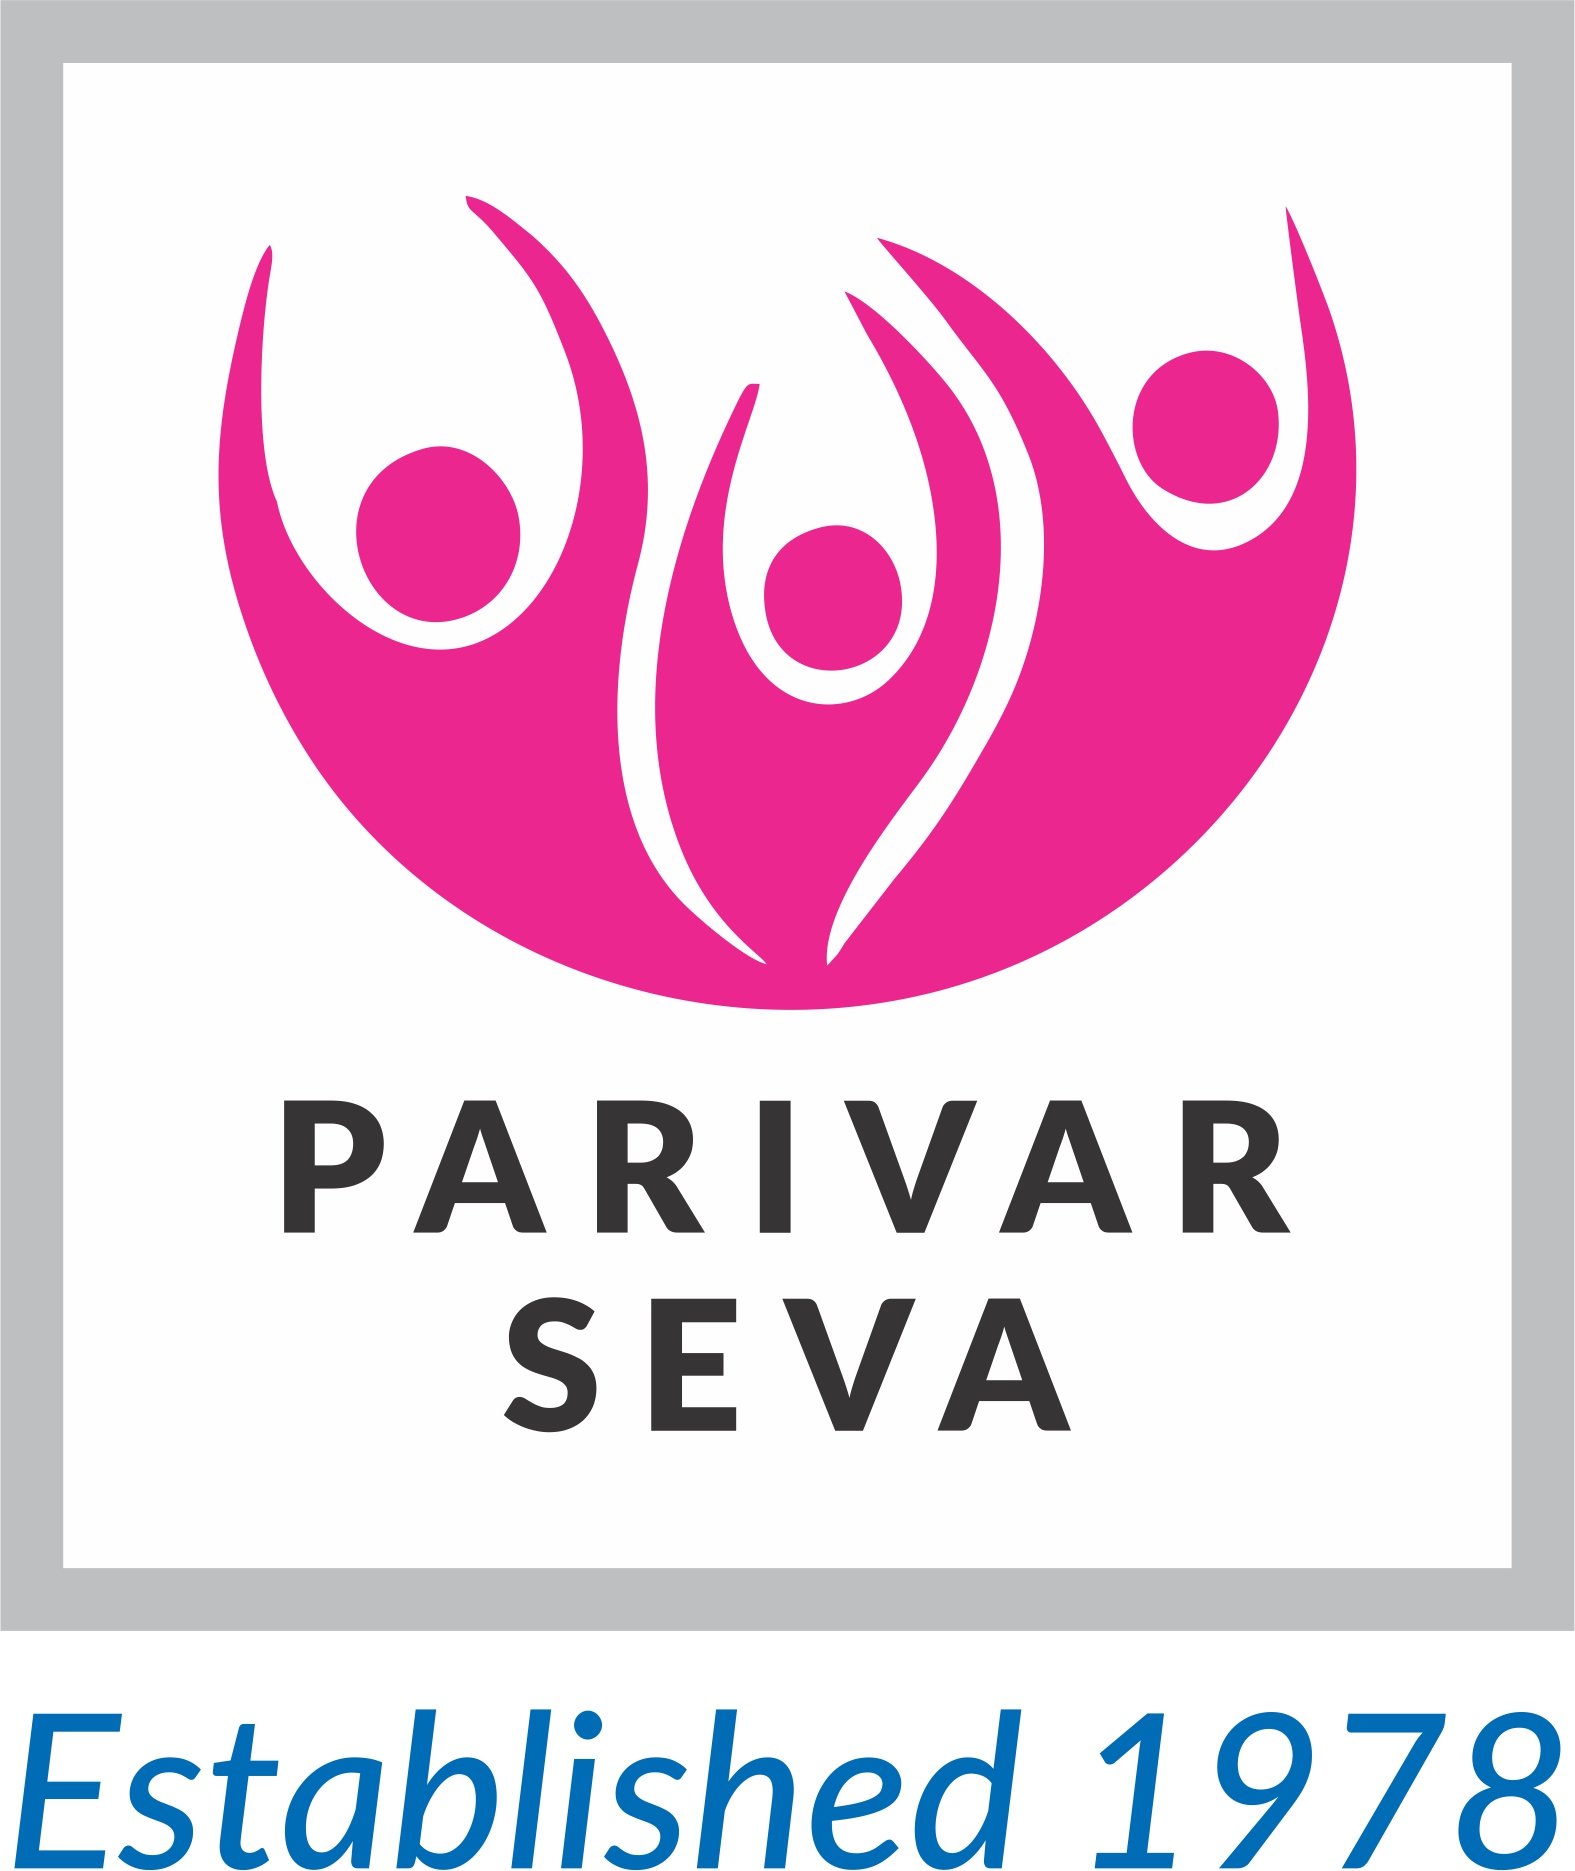 Welcome to Parivar Seva